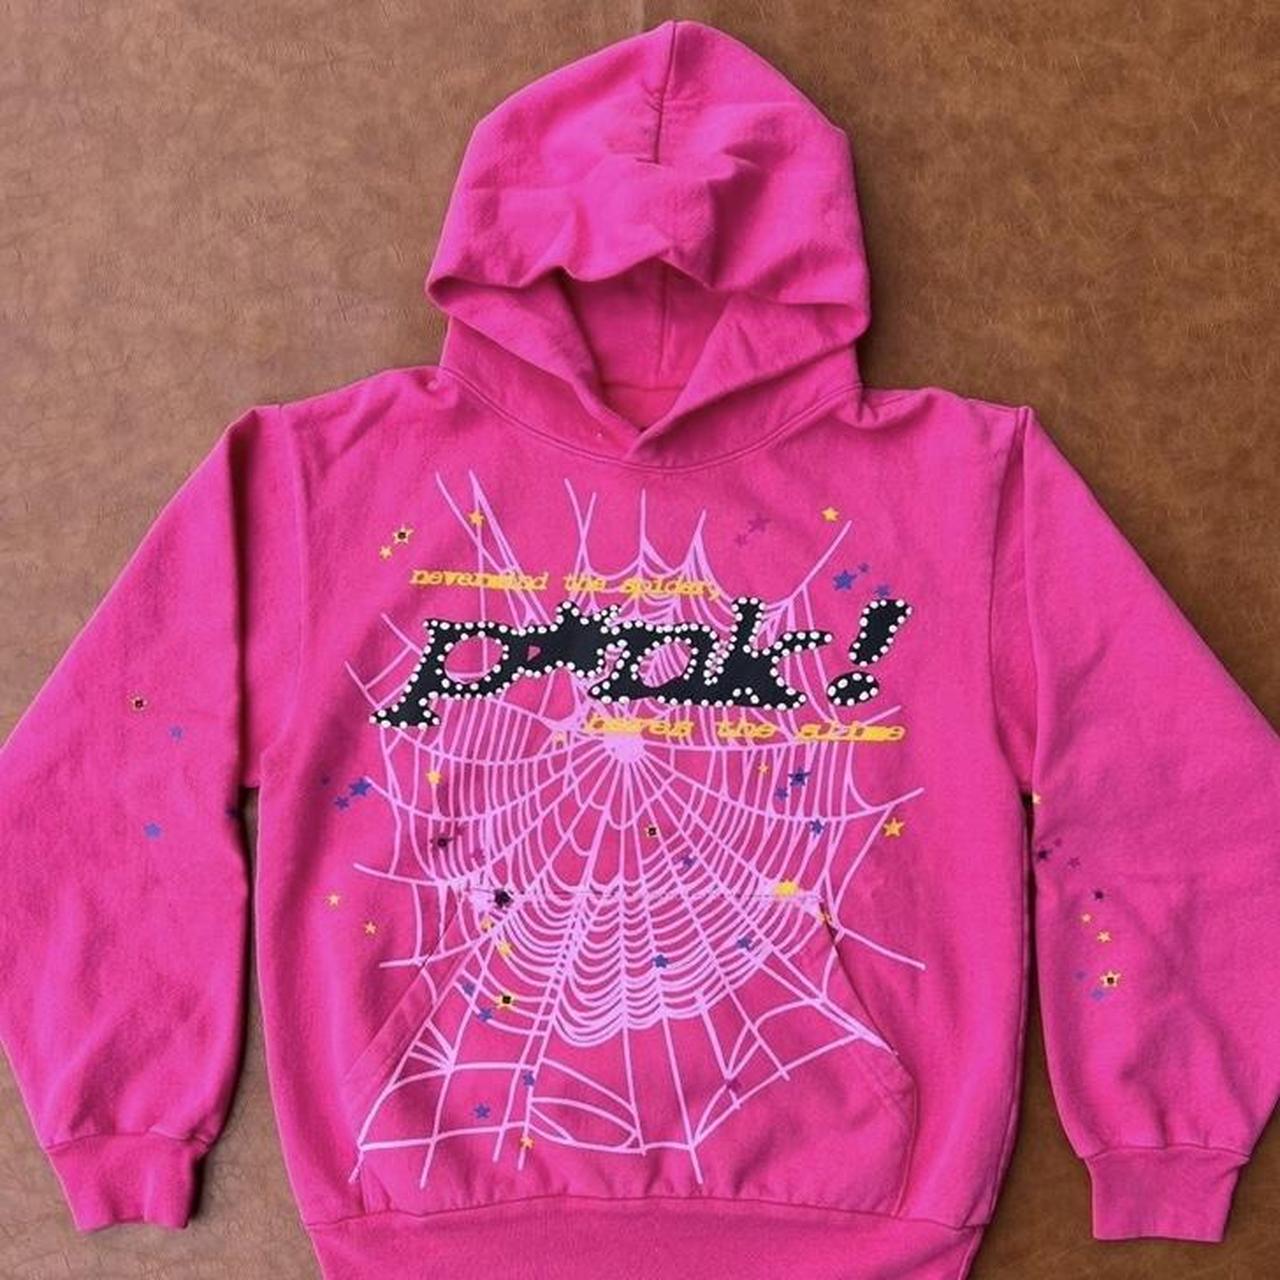 Spider Hoodie Pink #sp5der #y2k #fashion - Depop